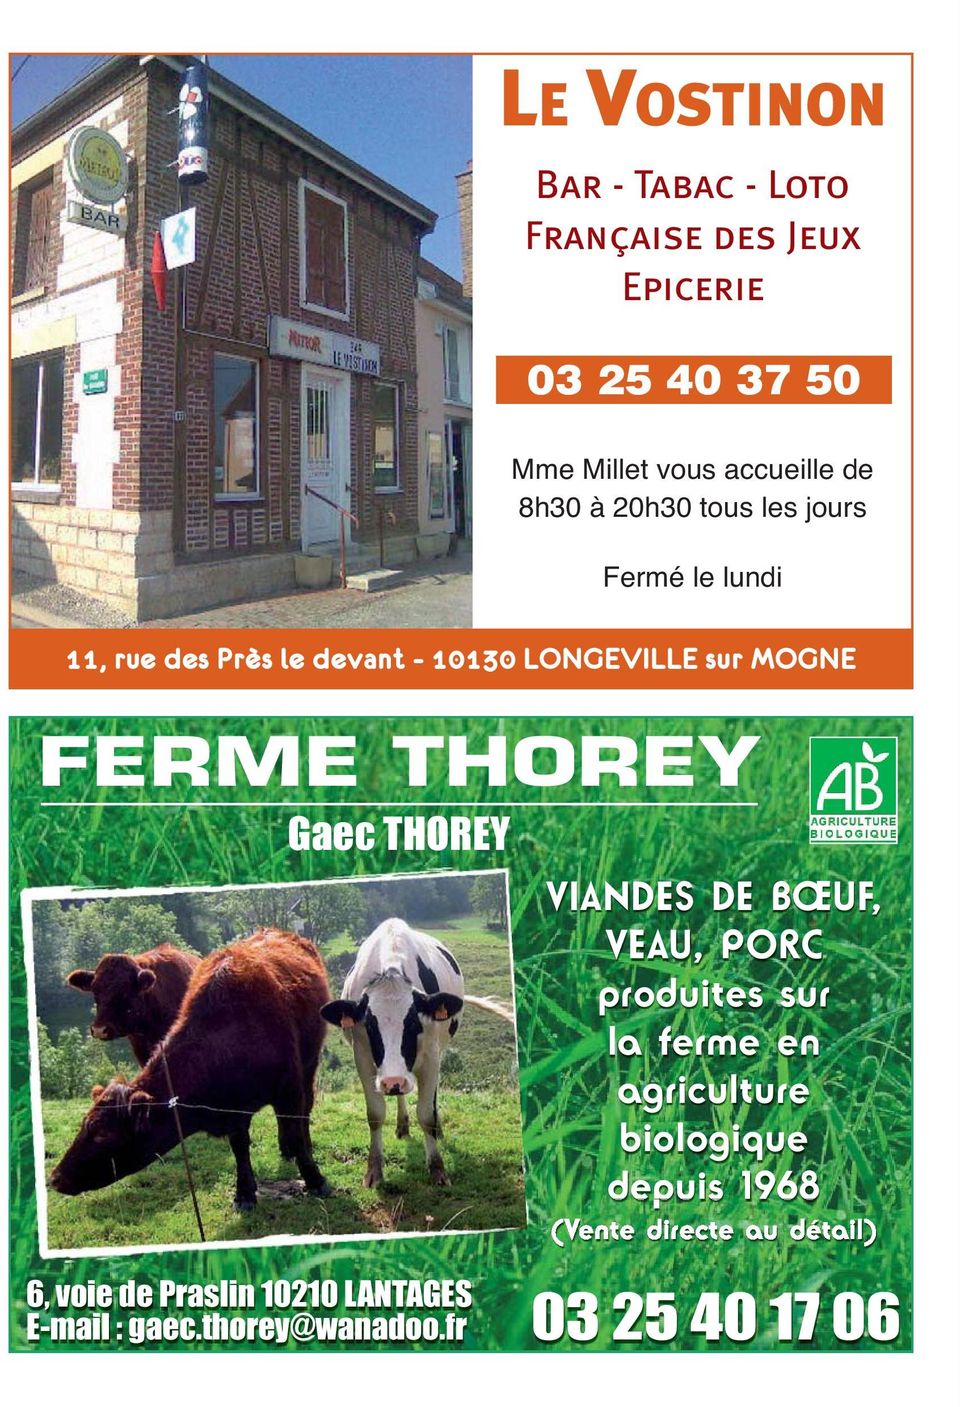 THOREY Gaec THOREY VIANDES DE BŒUF, VEAU, PORC produites sur la ferme en agriculture biologique depuis